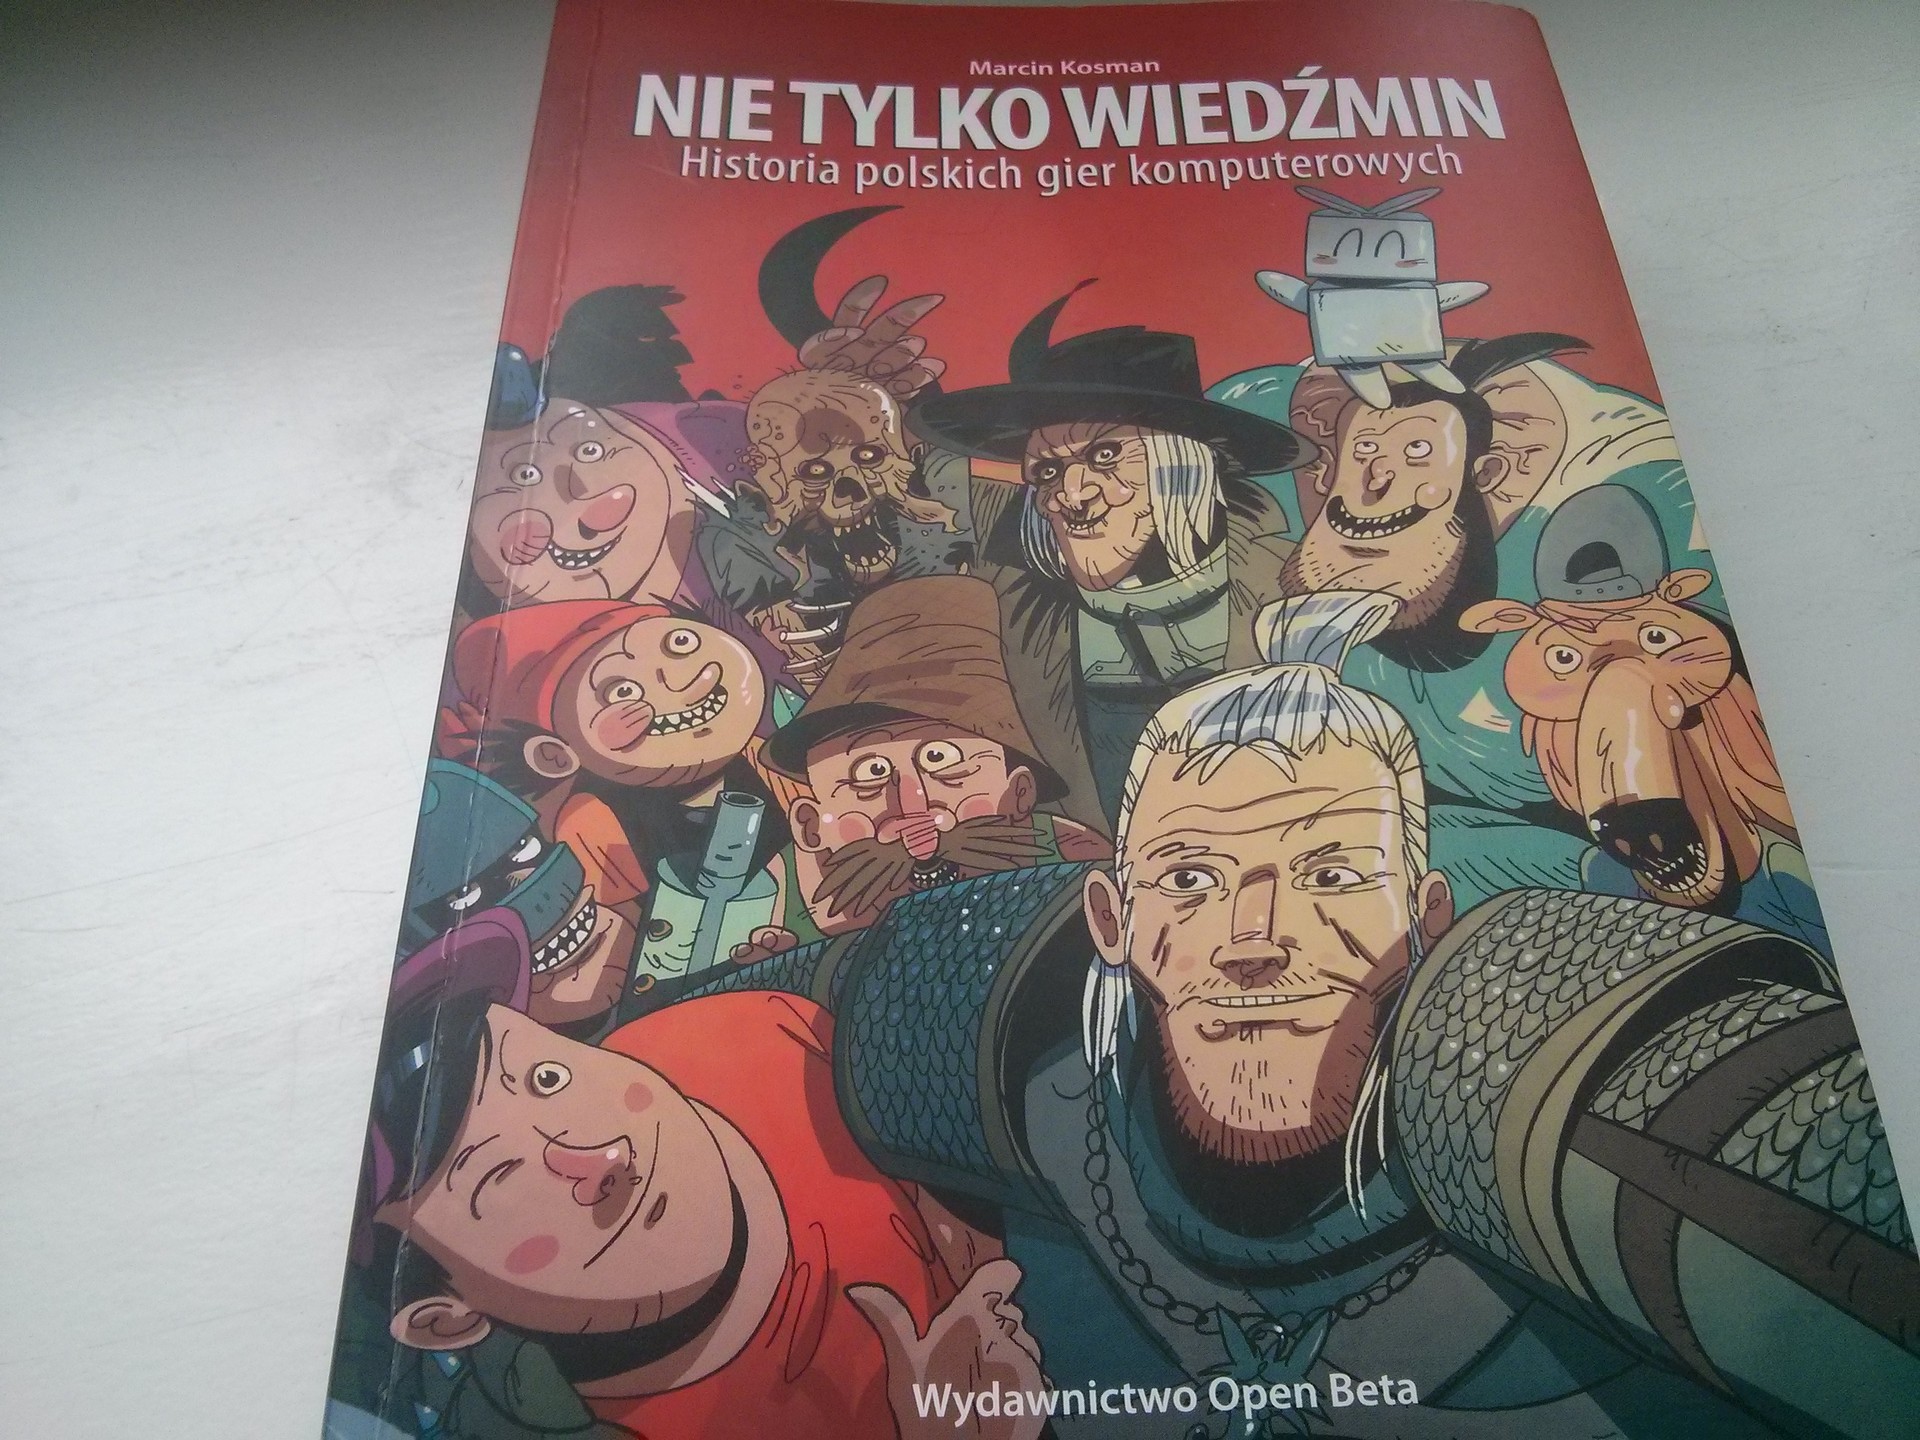 Nie tylko Wiedźmin: Historia polskich gier komputerowych - recenzja książki